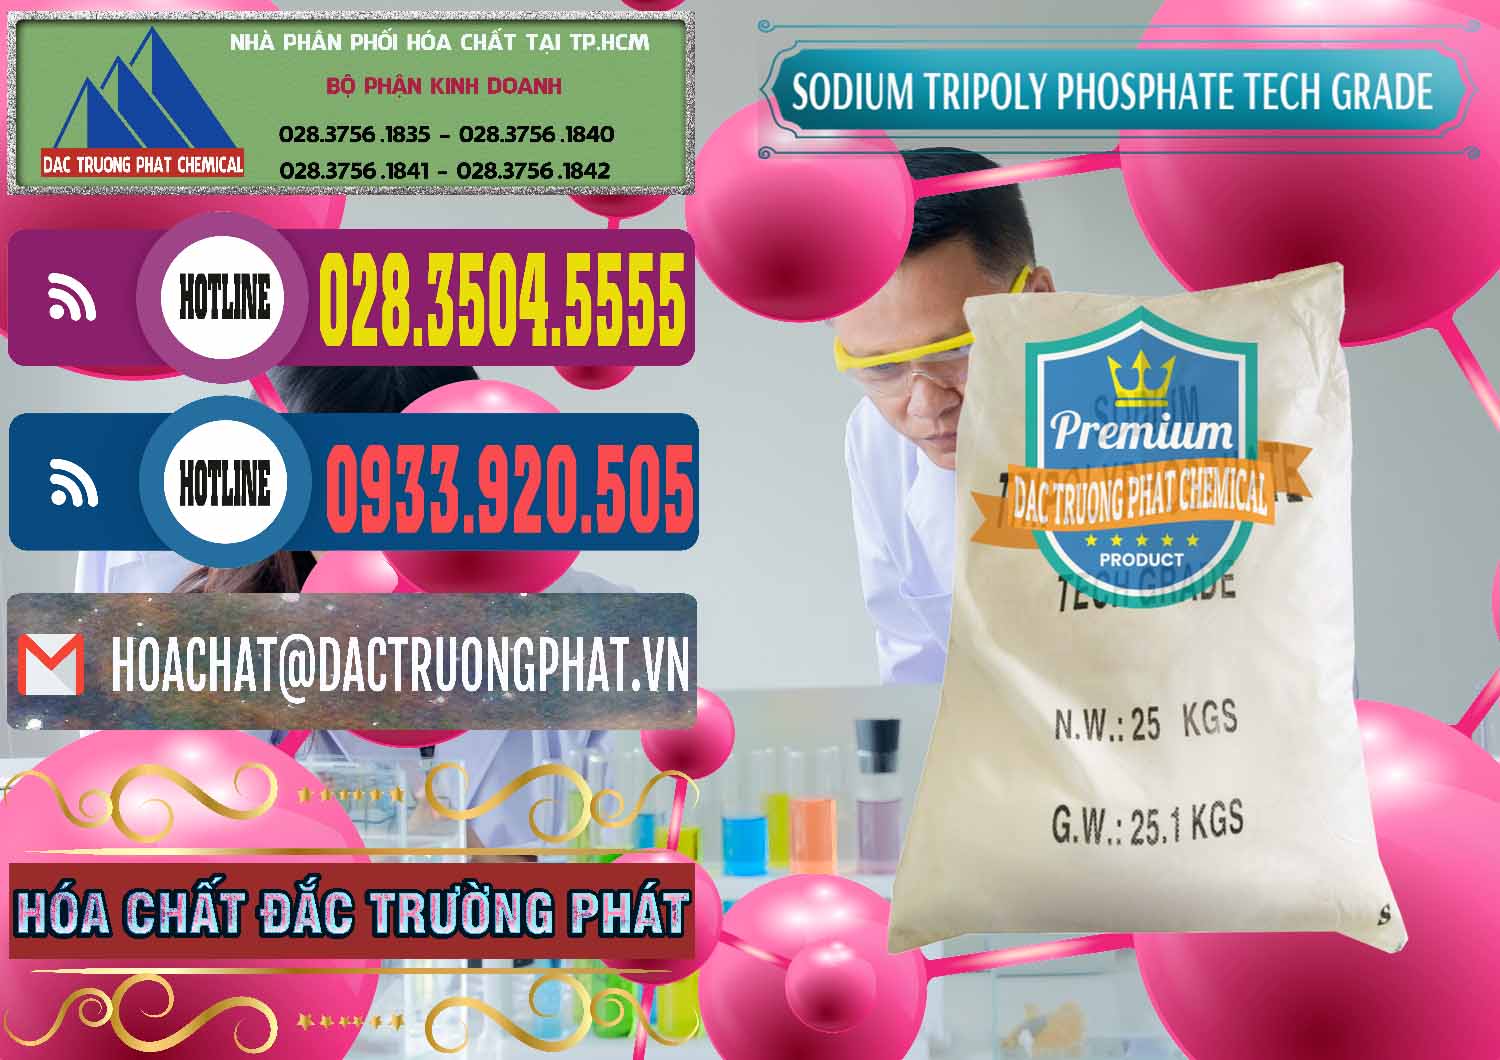 Chuyên bán ( cung ứng ) Sodium Tripoly Phosphate - STPP Tech Grade Trung Quốc China - 0453 - Công ty cung cấp và kinh doanh hóa chất tại TP.HCM - muabanhoachat.com.vn